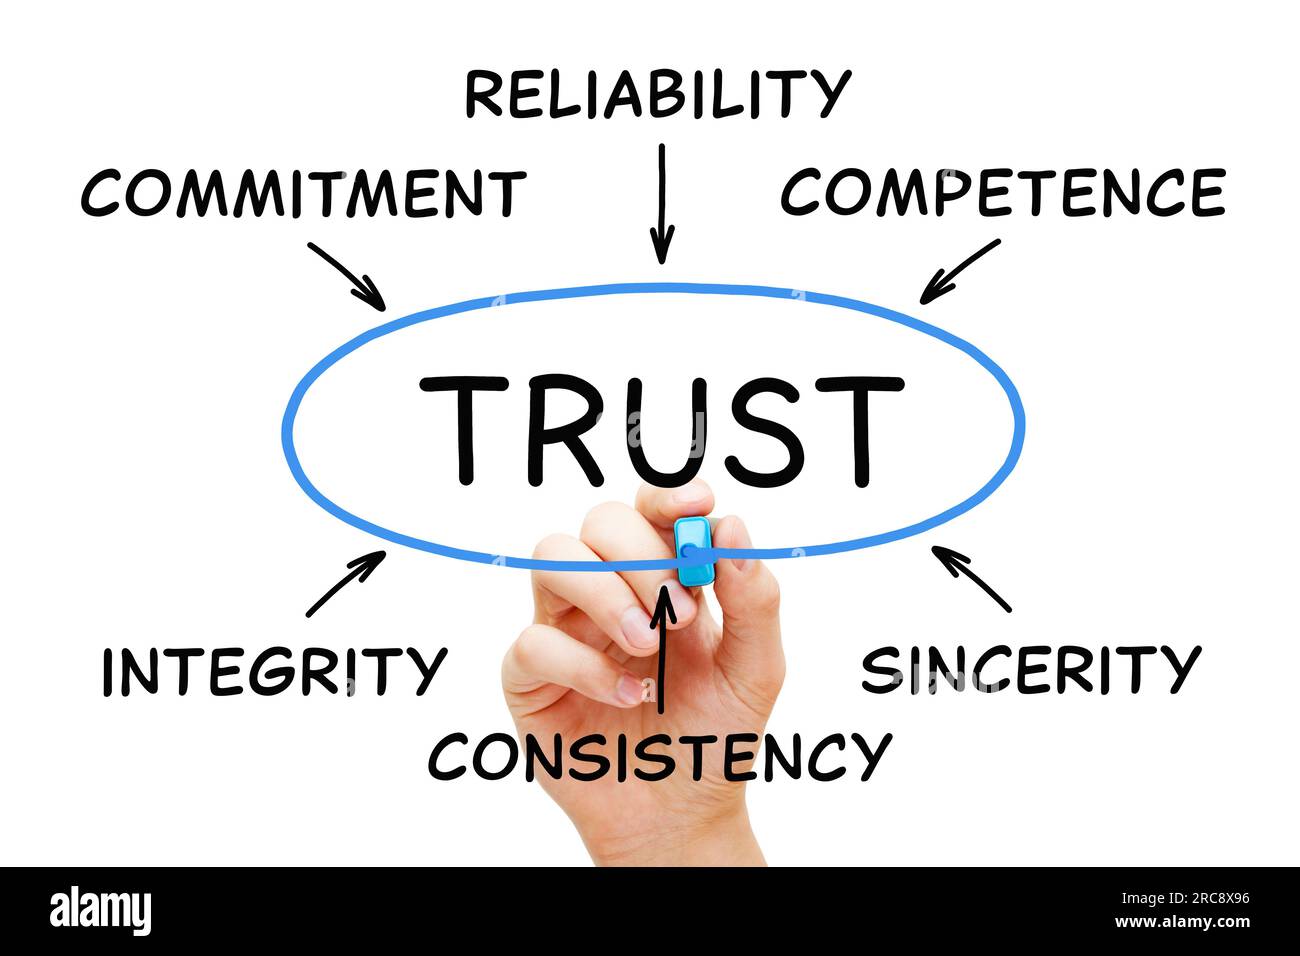 Concept de diagramme d'écriture à la main sur la confiance dans les affaires avec des mots connexes fiabilité, intégrité, compétence, sincérité, engagement et cohérence. Banque D'Images